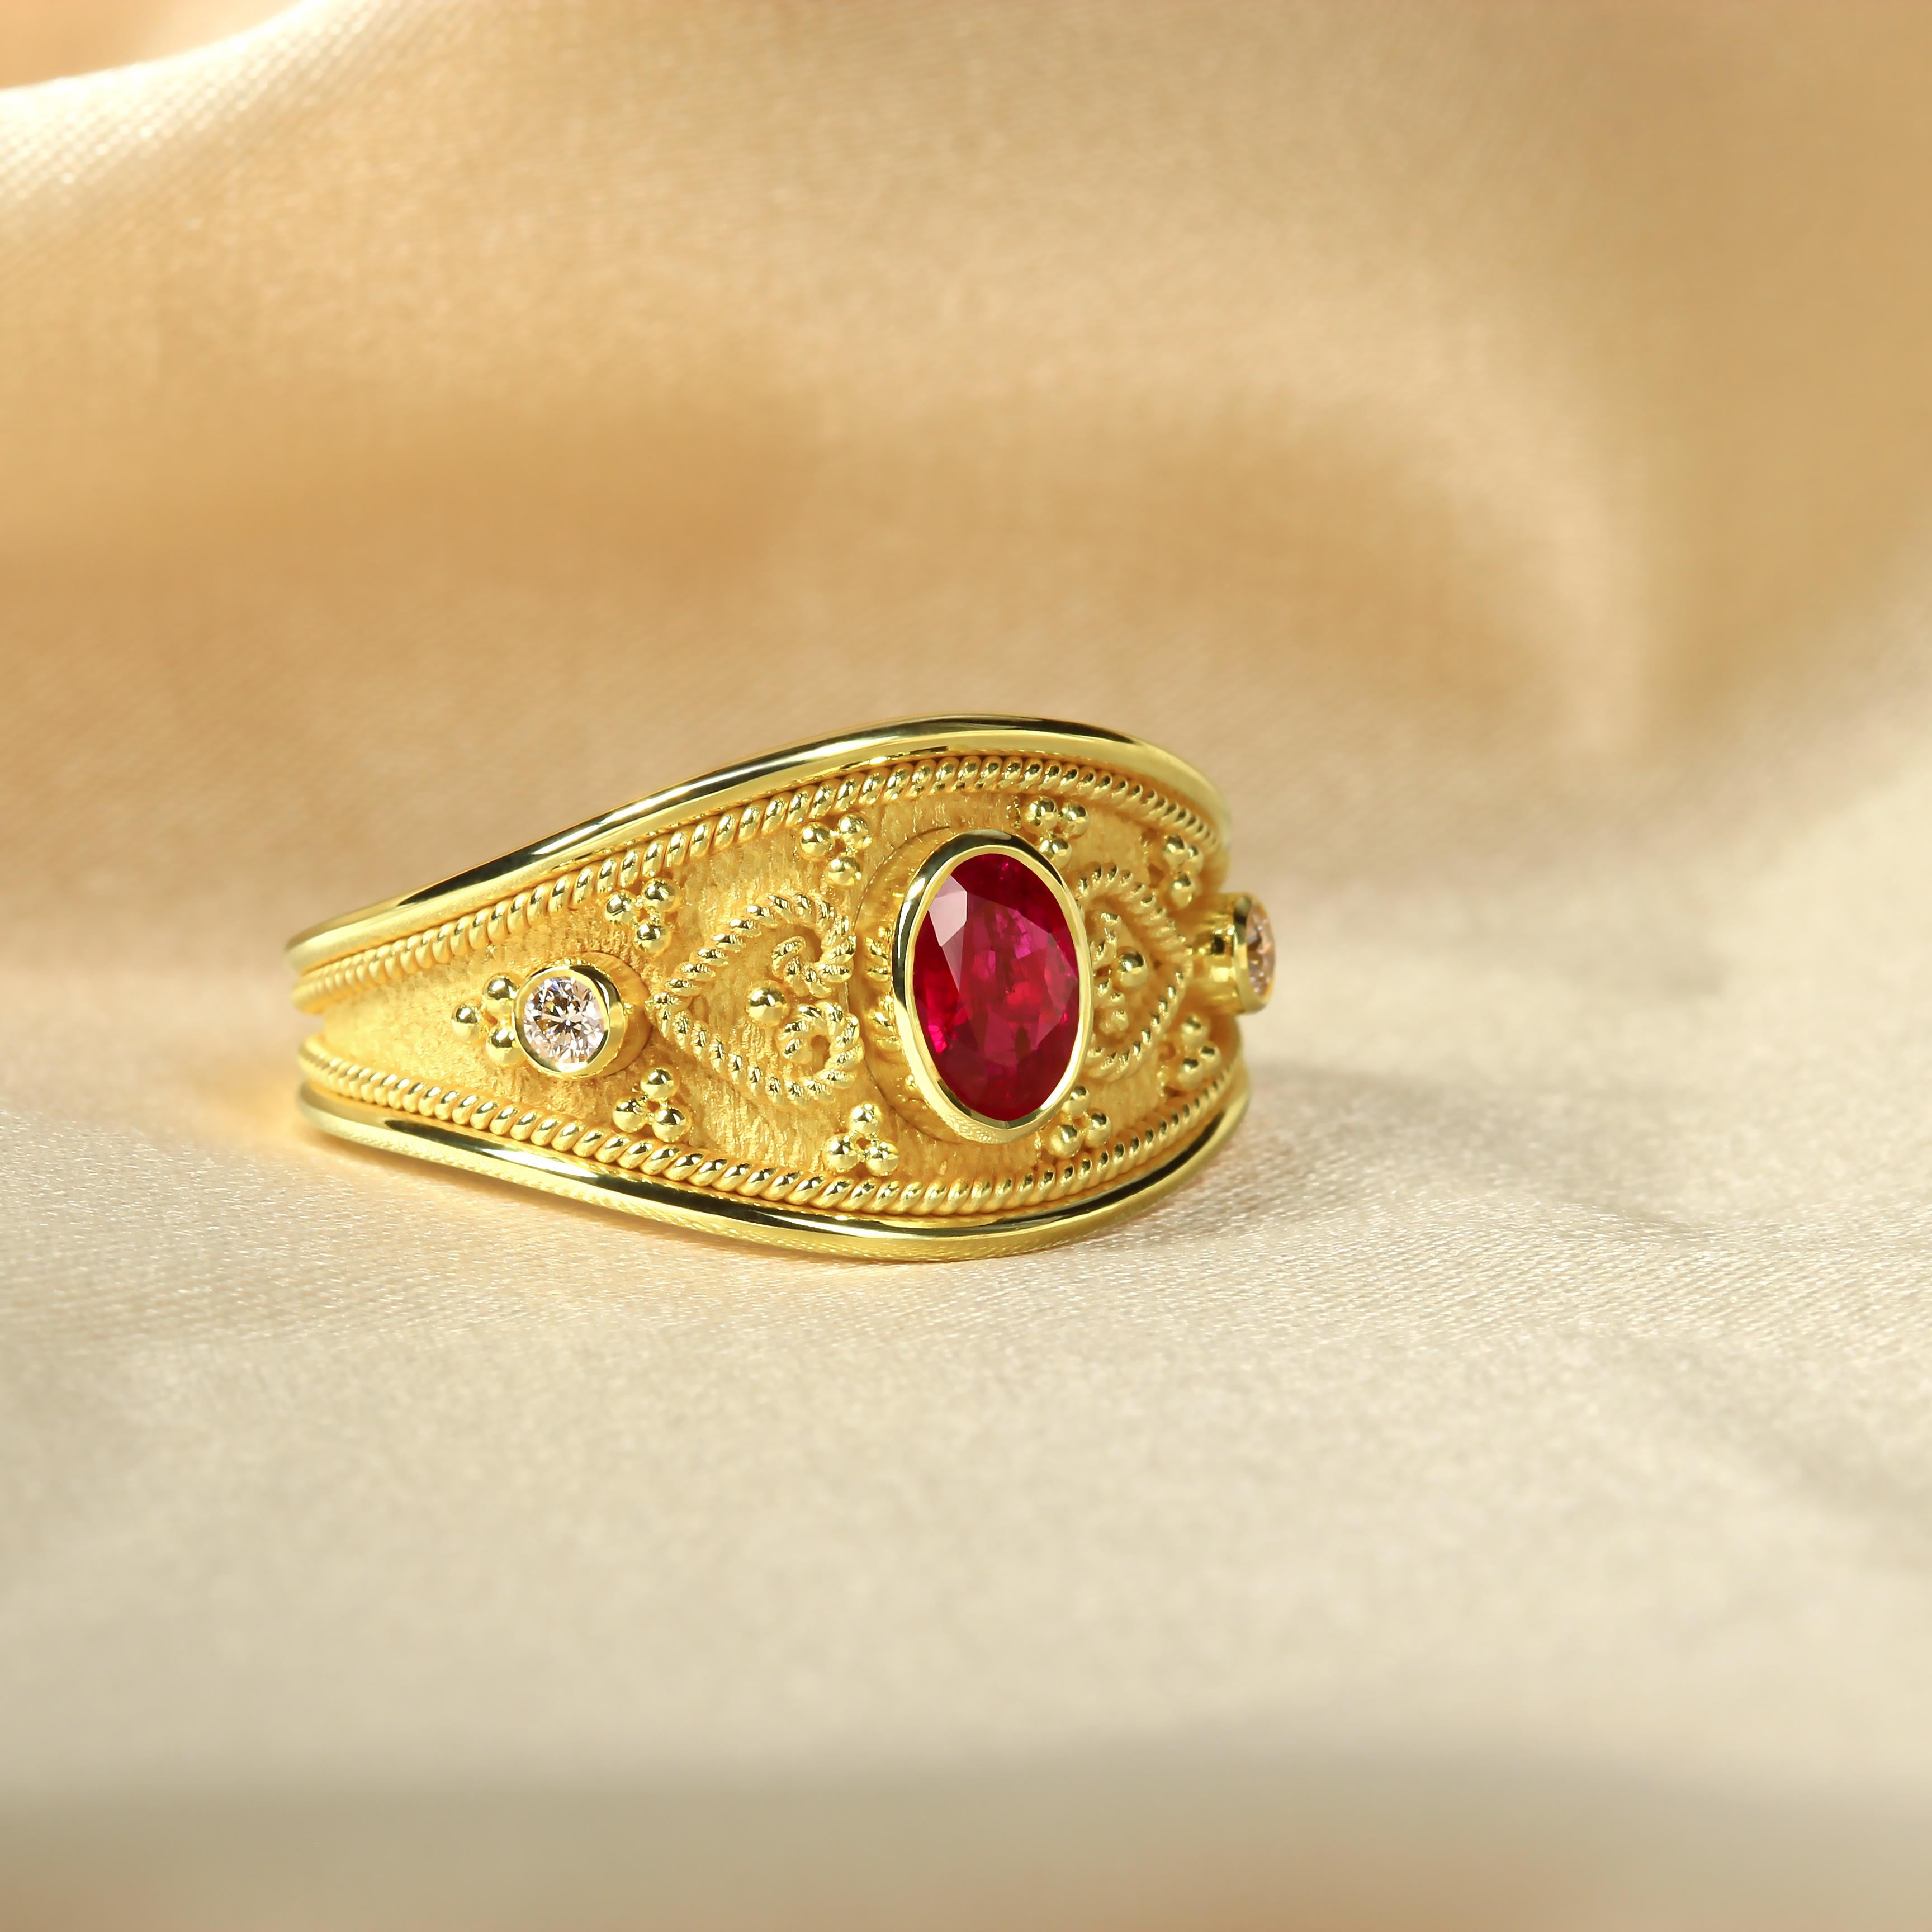 Lassen Sie sich von der Leidenschaft und Eleganz unseres exquisiten Goldrings mit einem fesselnden ovalen Rubin verzaubern, der auf beiden Seiten von schimmernden Brillanten umgeben ist. Mit zarten herzförmigen Details verziert, strahlt dieser Ring